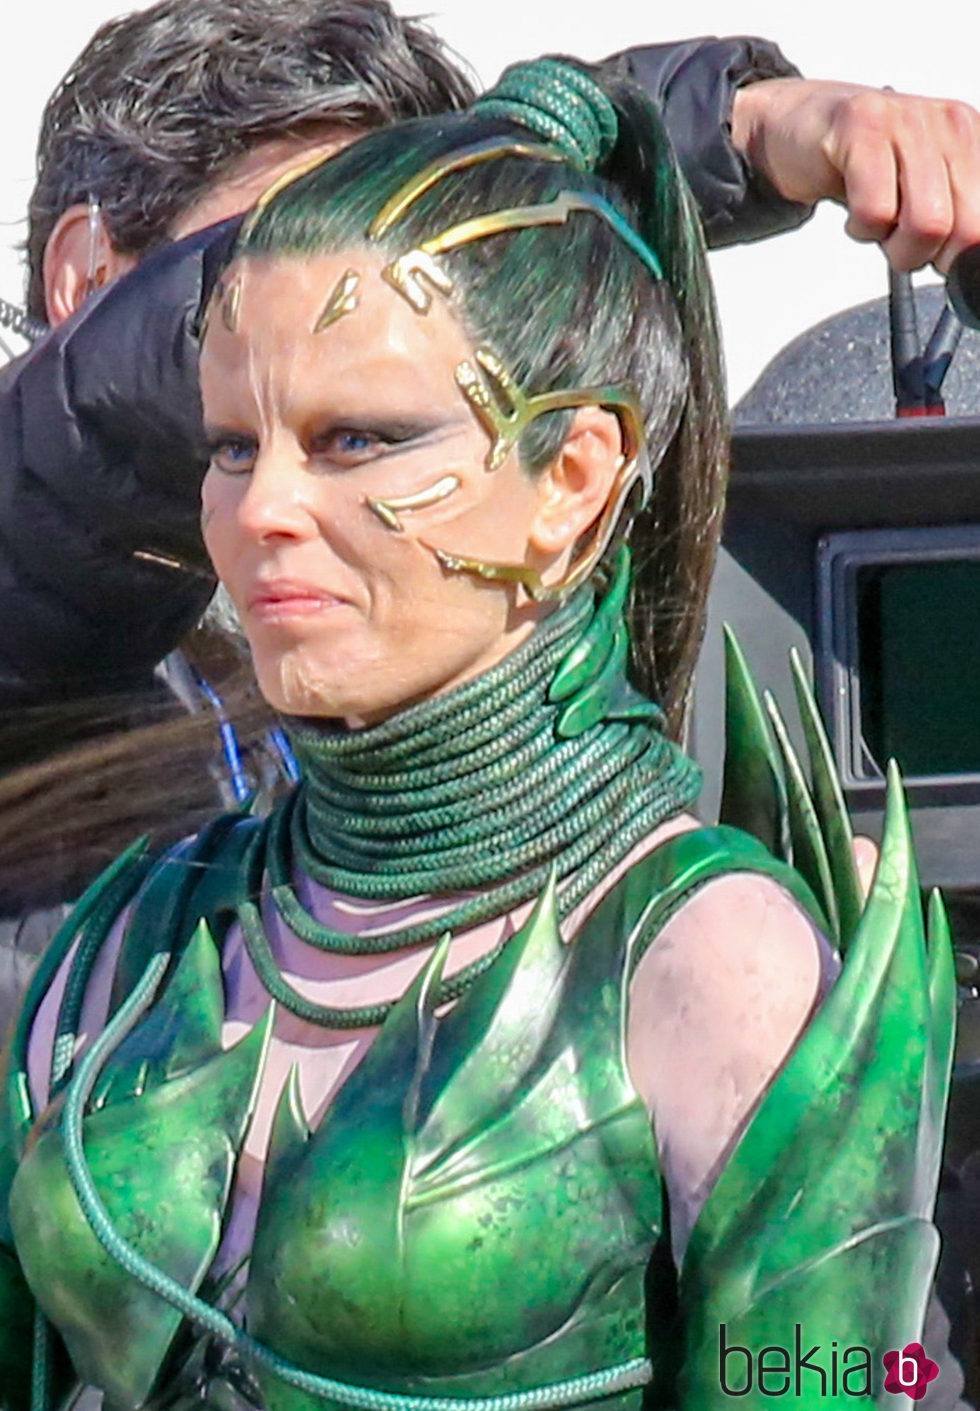 Elizabeth Banks continua como Rita Repulsa en el rodaje de la película 'Power Rangers'